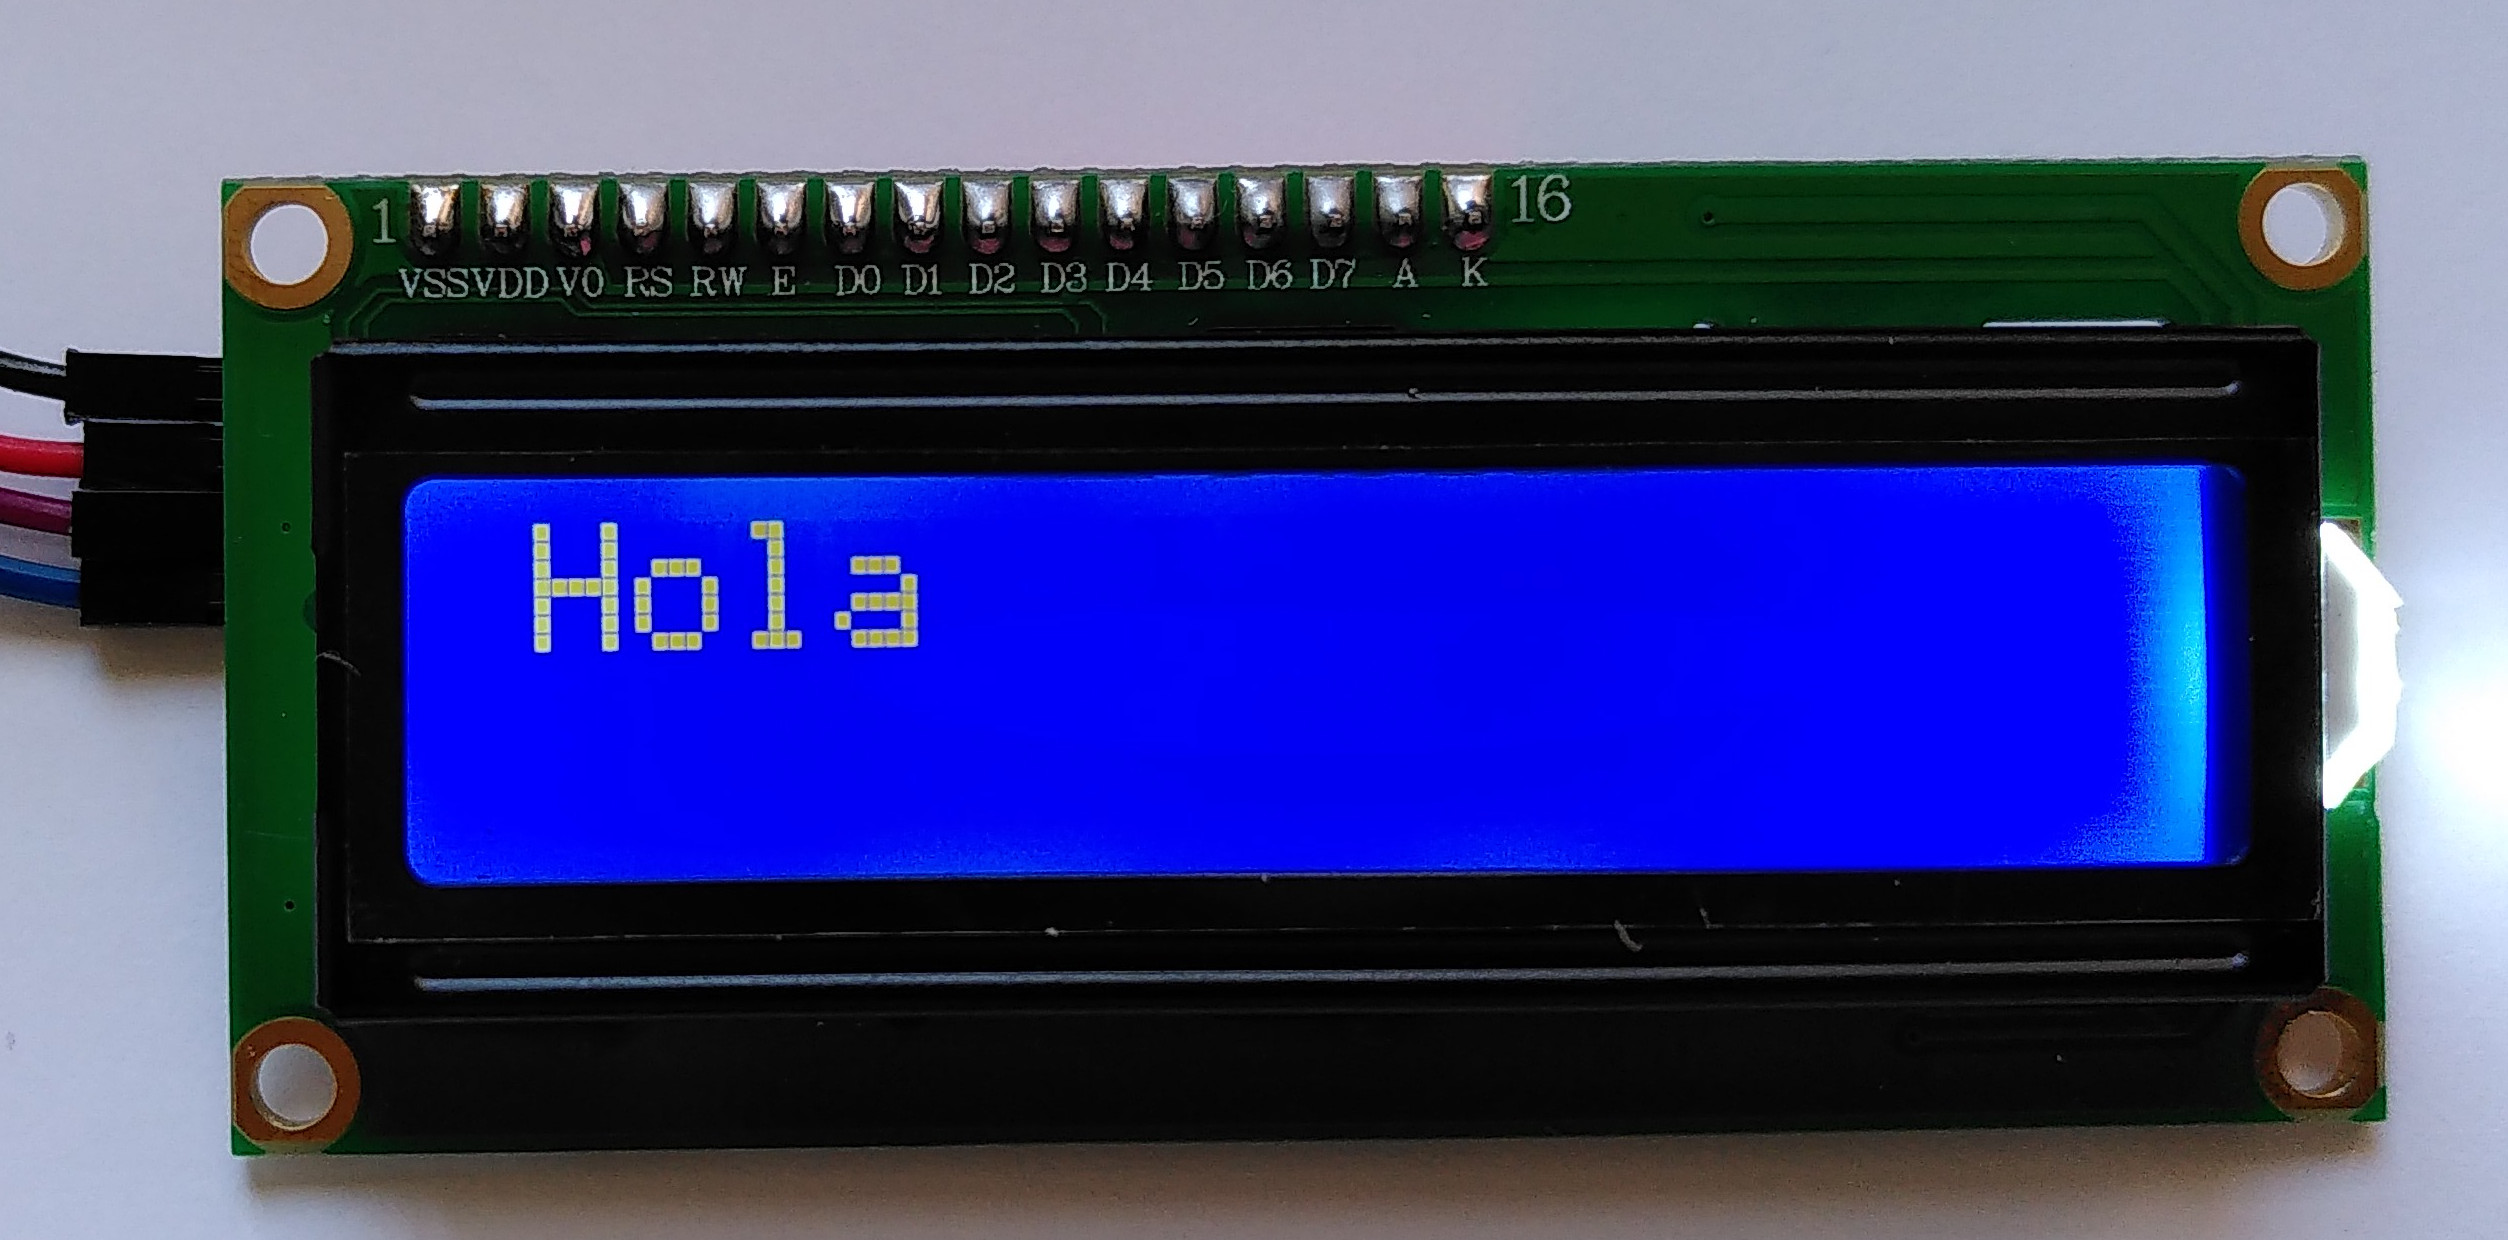 Pantalla LCD missatge Hola